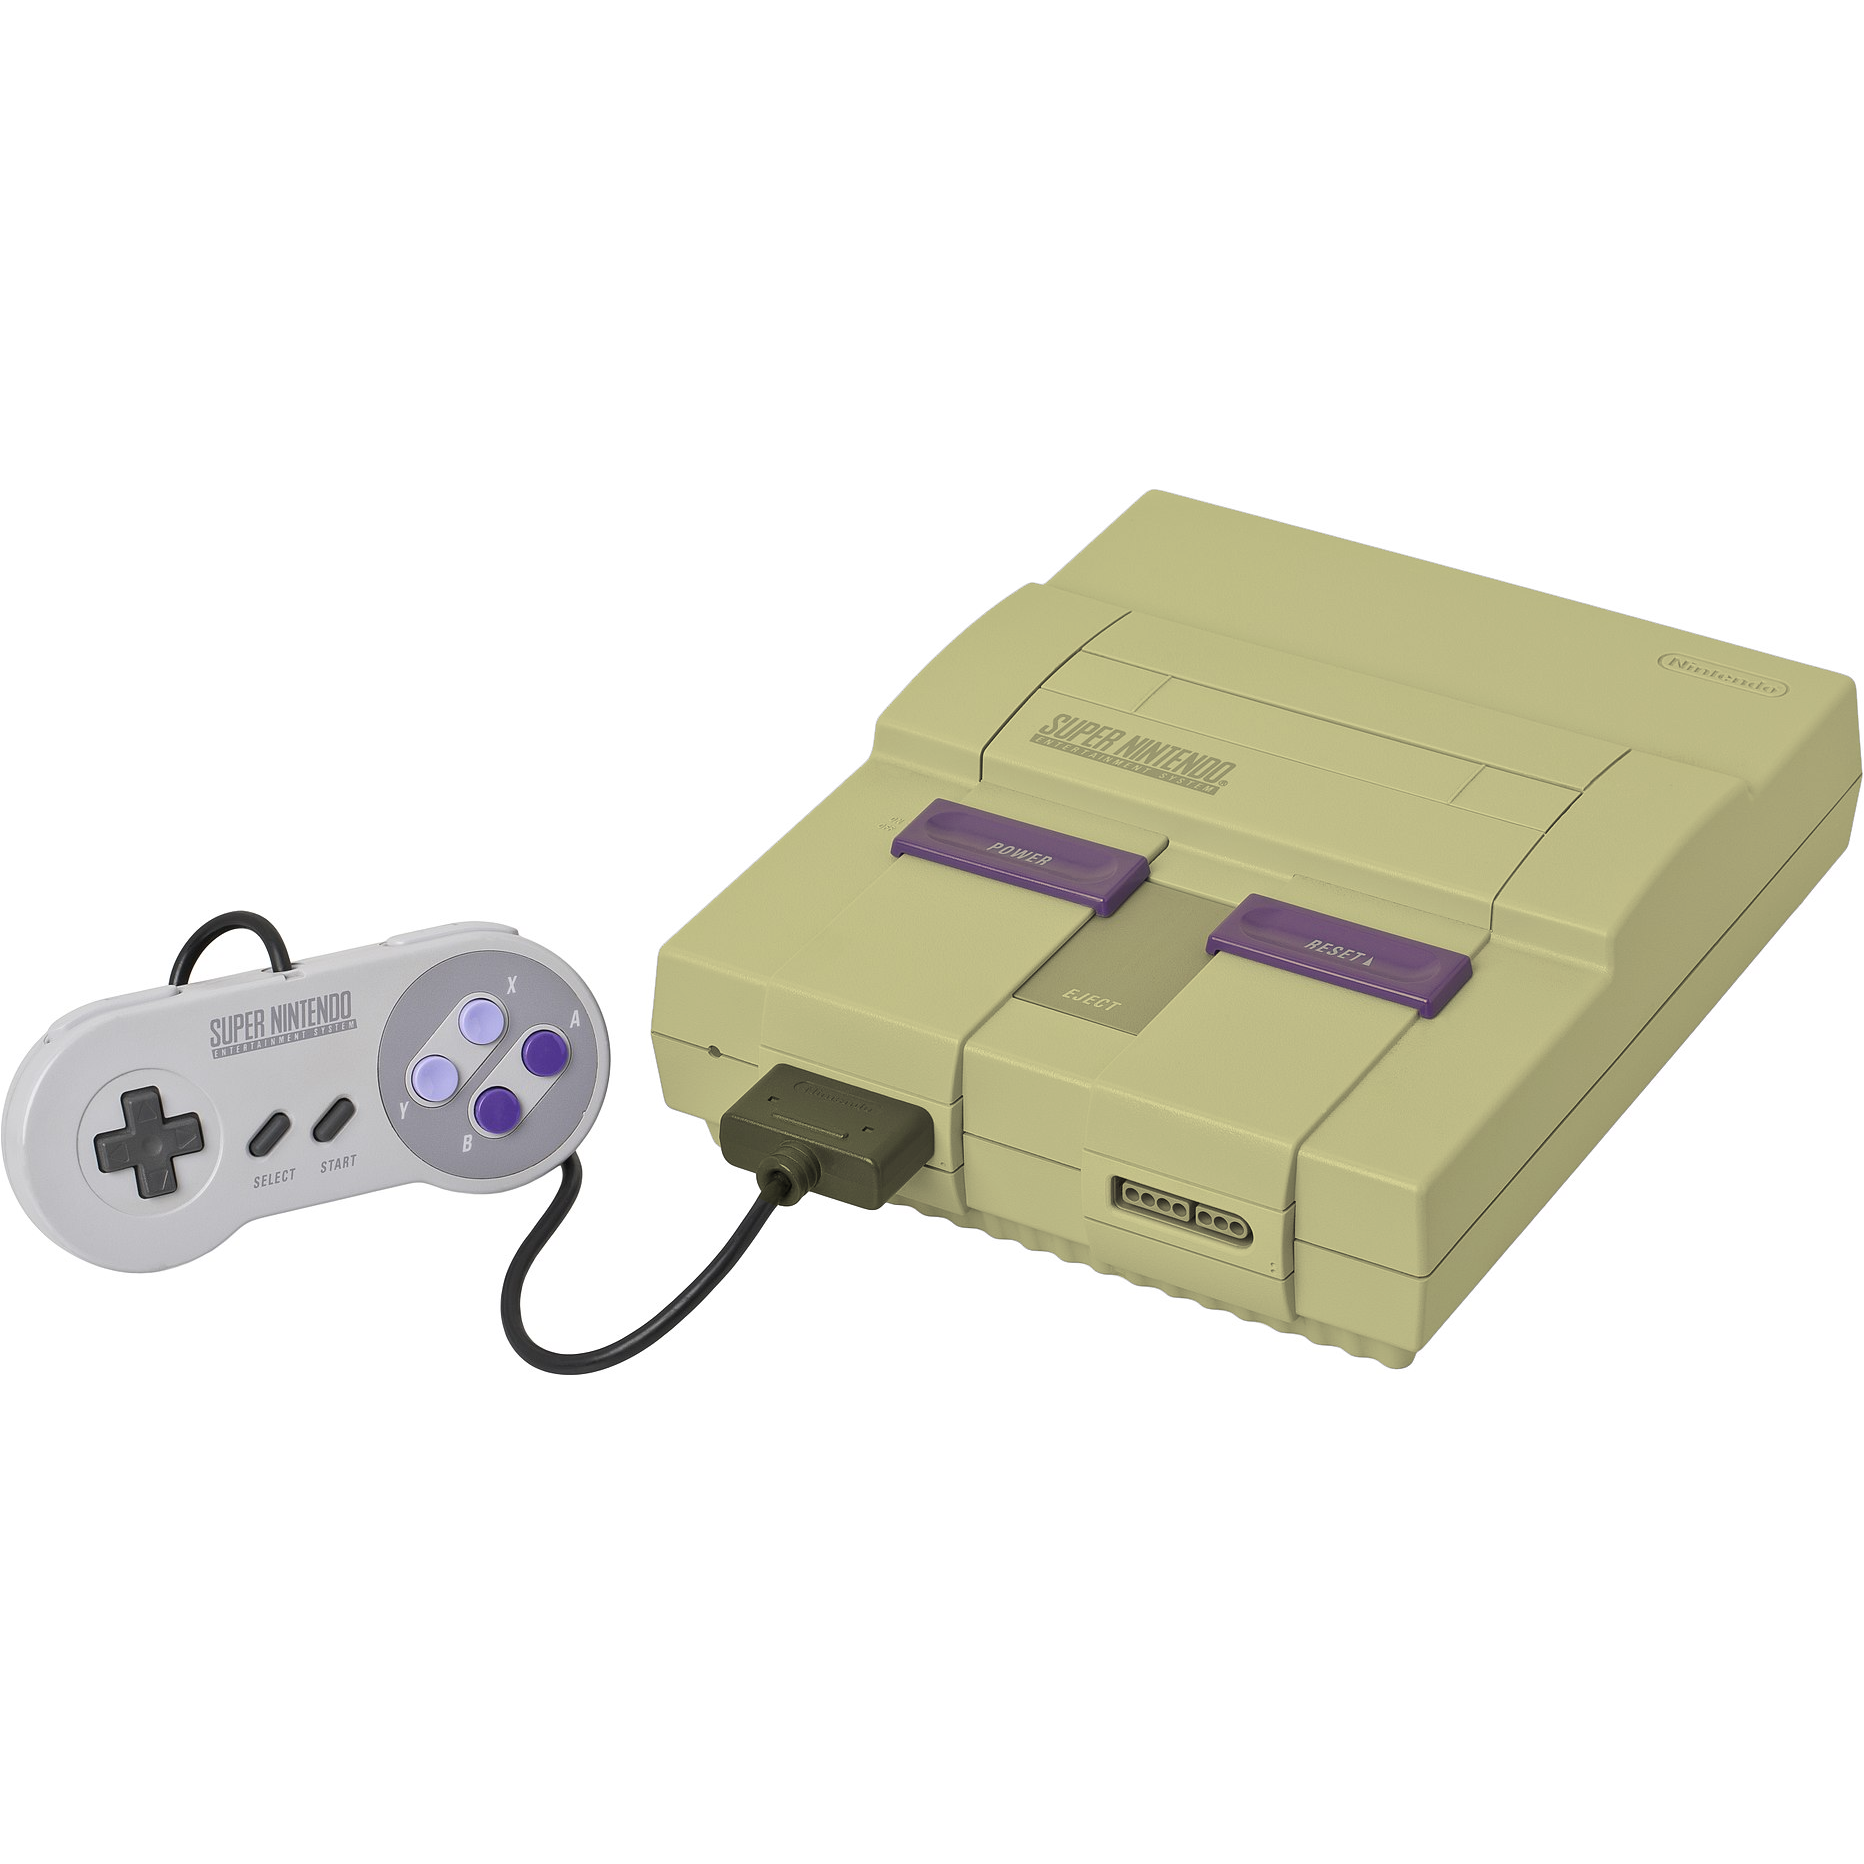 Super Nintendo Entertainment System (Grade 3)